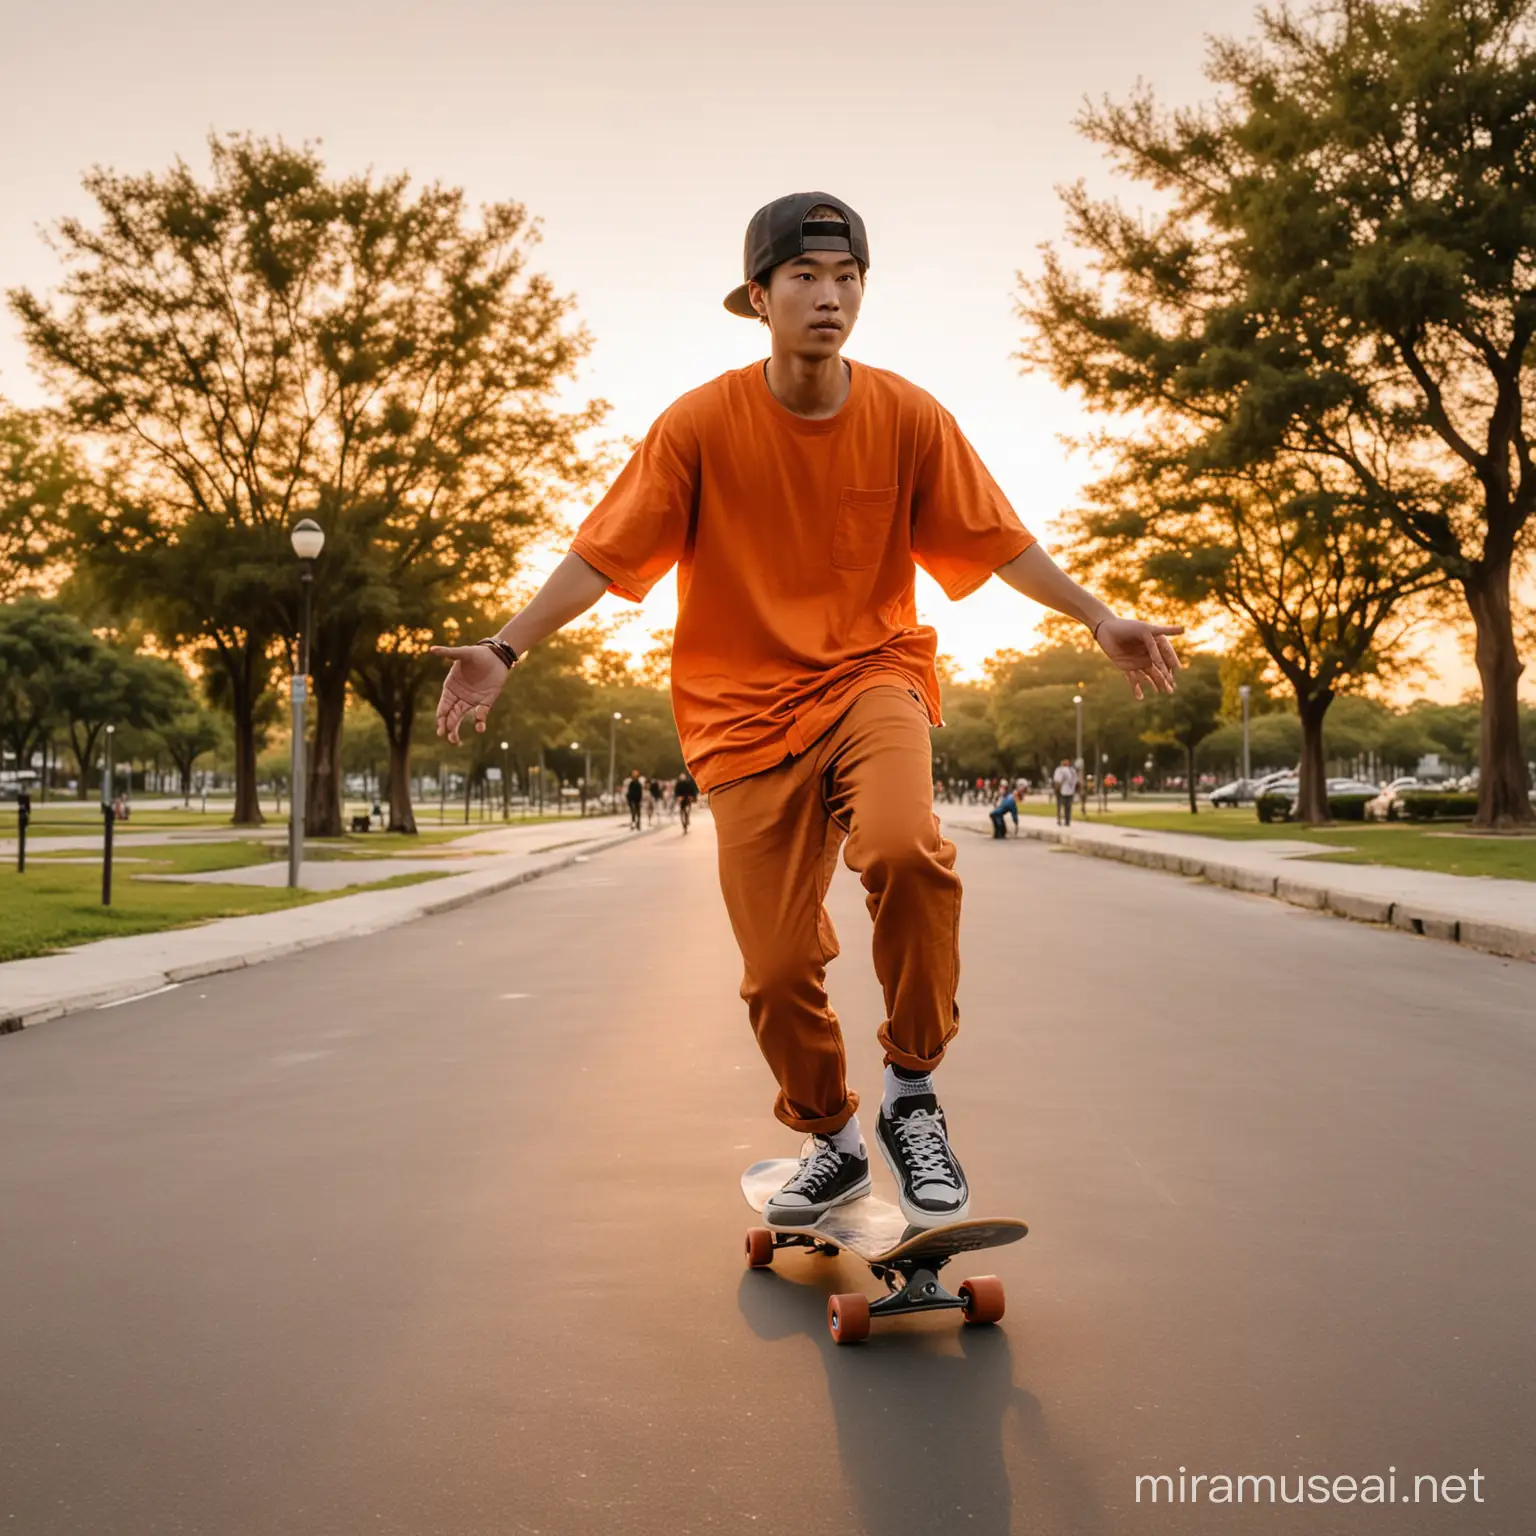 Asian Guy Skateboarding in Orange Sunset Park